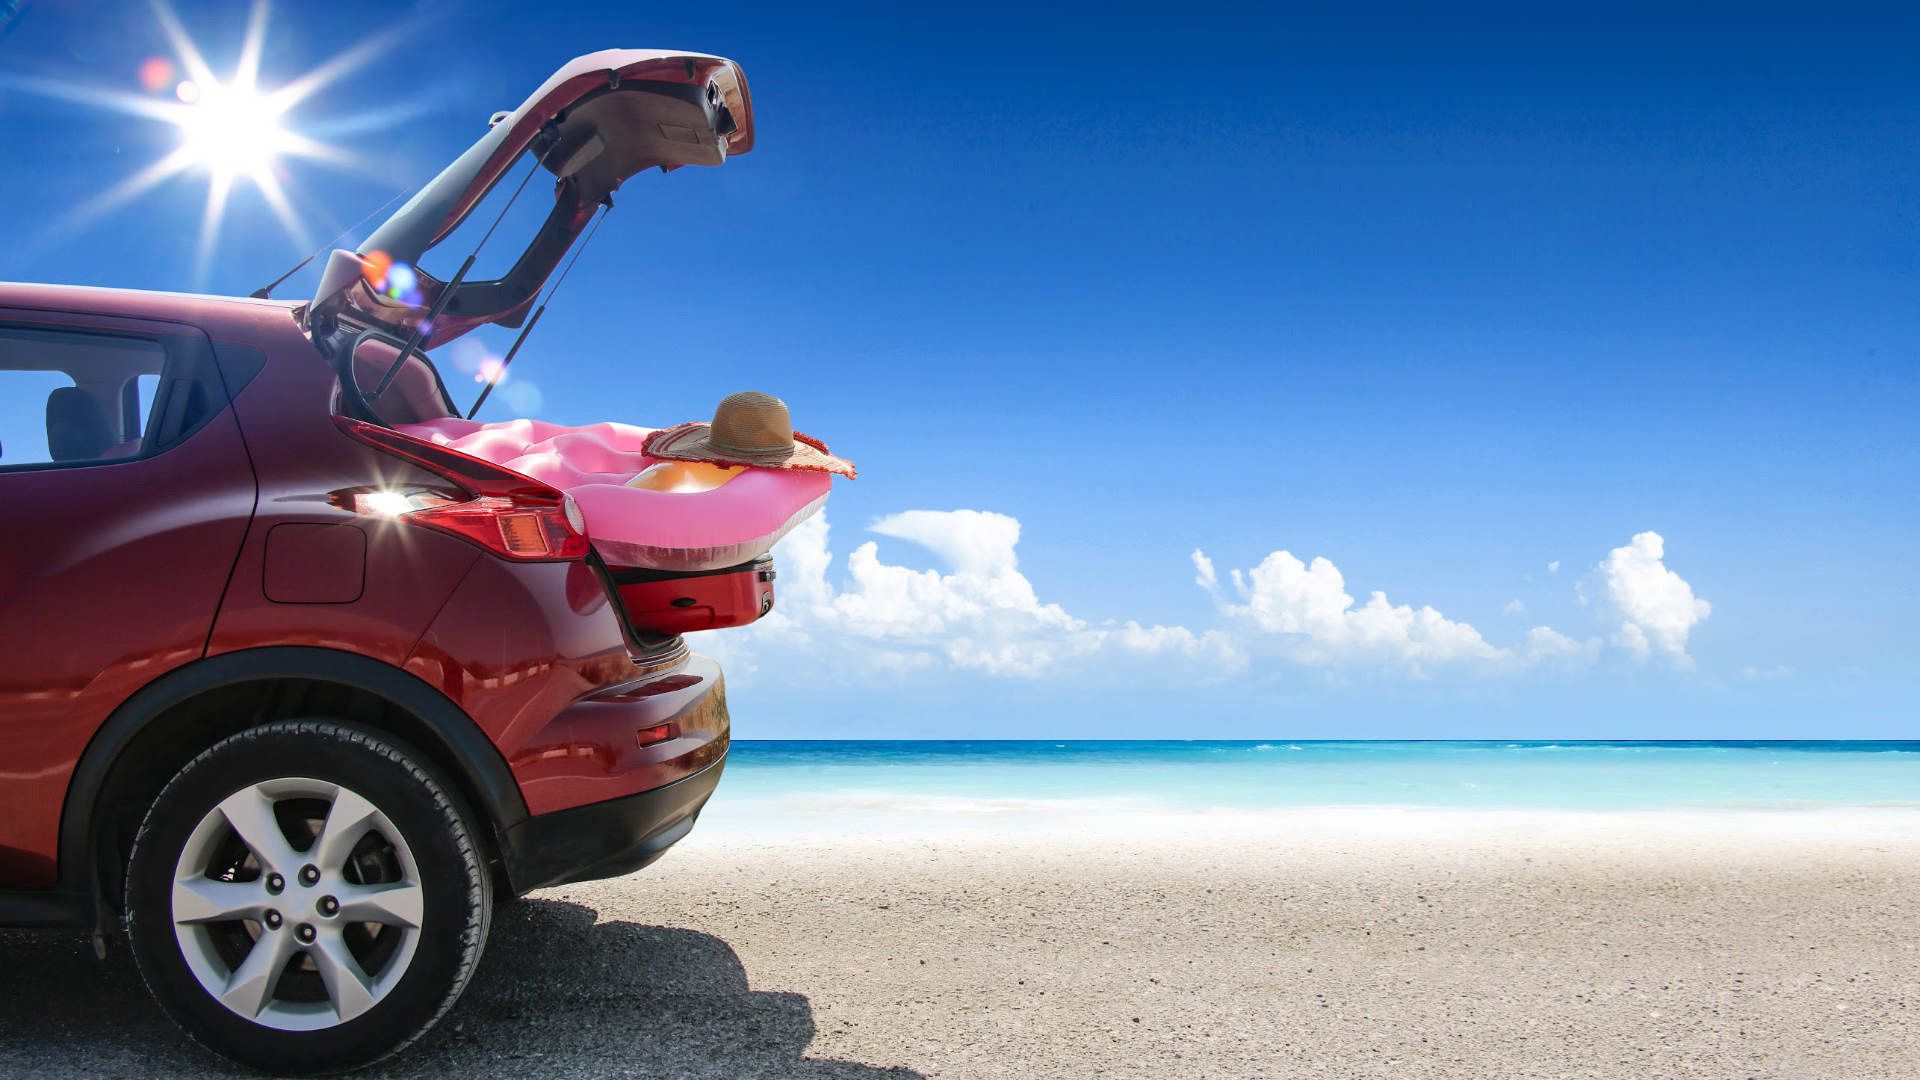 Τα 7 πιο «hot» tips για καλοκαιρινές διακοπές με αυτοκίνητο!